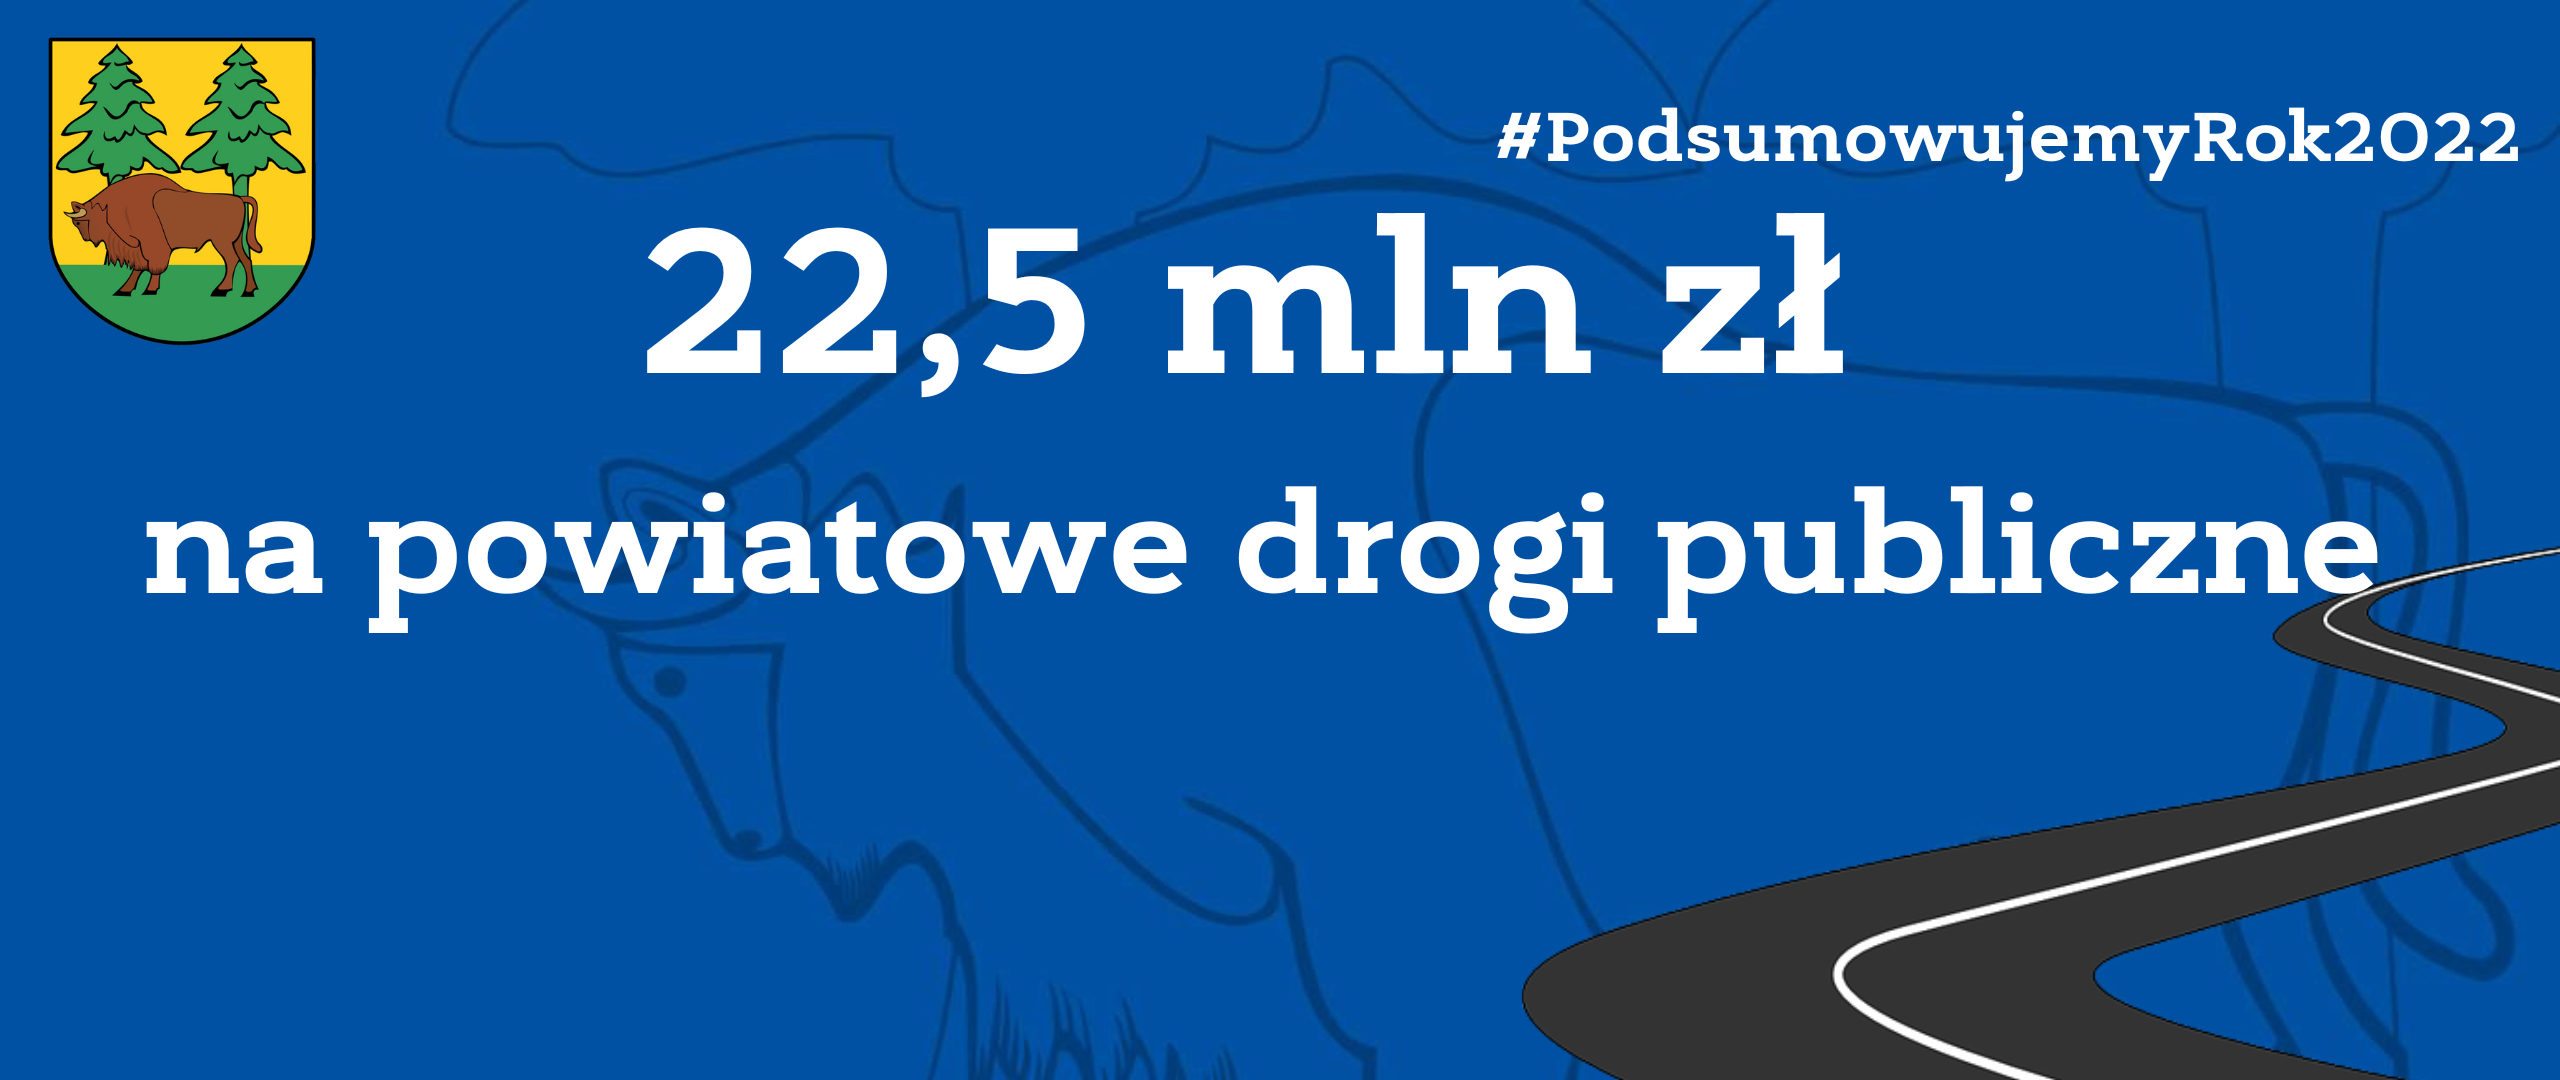 Na niebieskim tle napis: 22,5 mln zł na powiatowe drogi publiczne, u góry strony herb powiatu - na żółto-zielonym tle żubr i dwa świerki